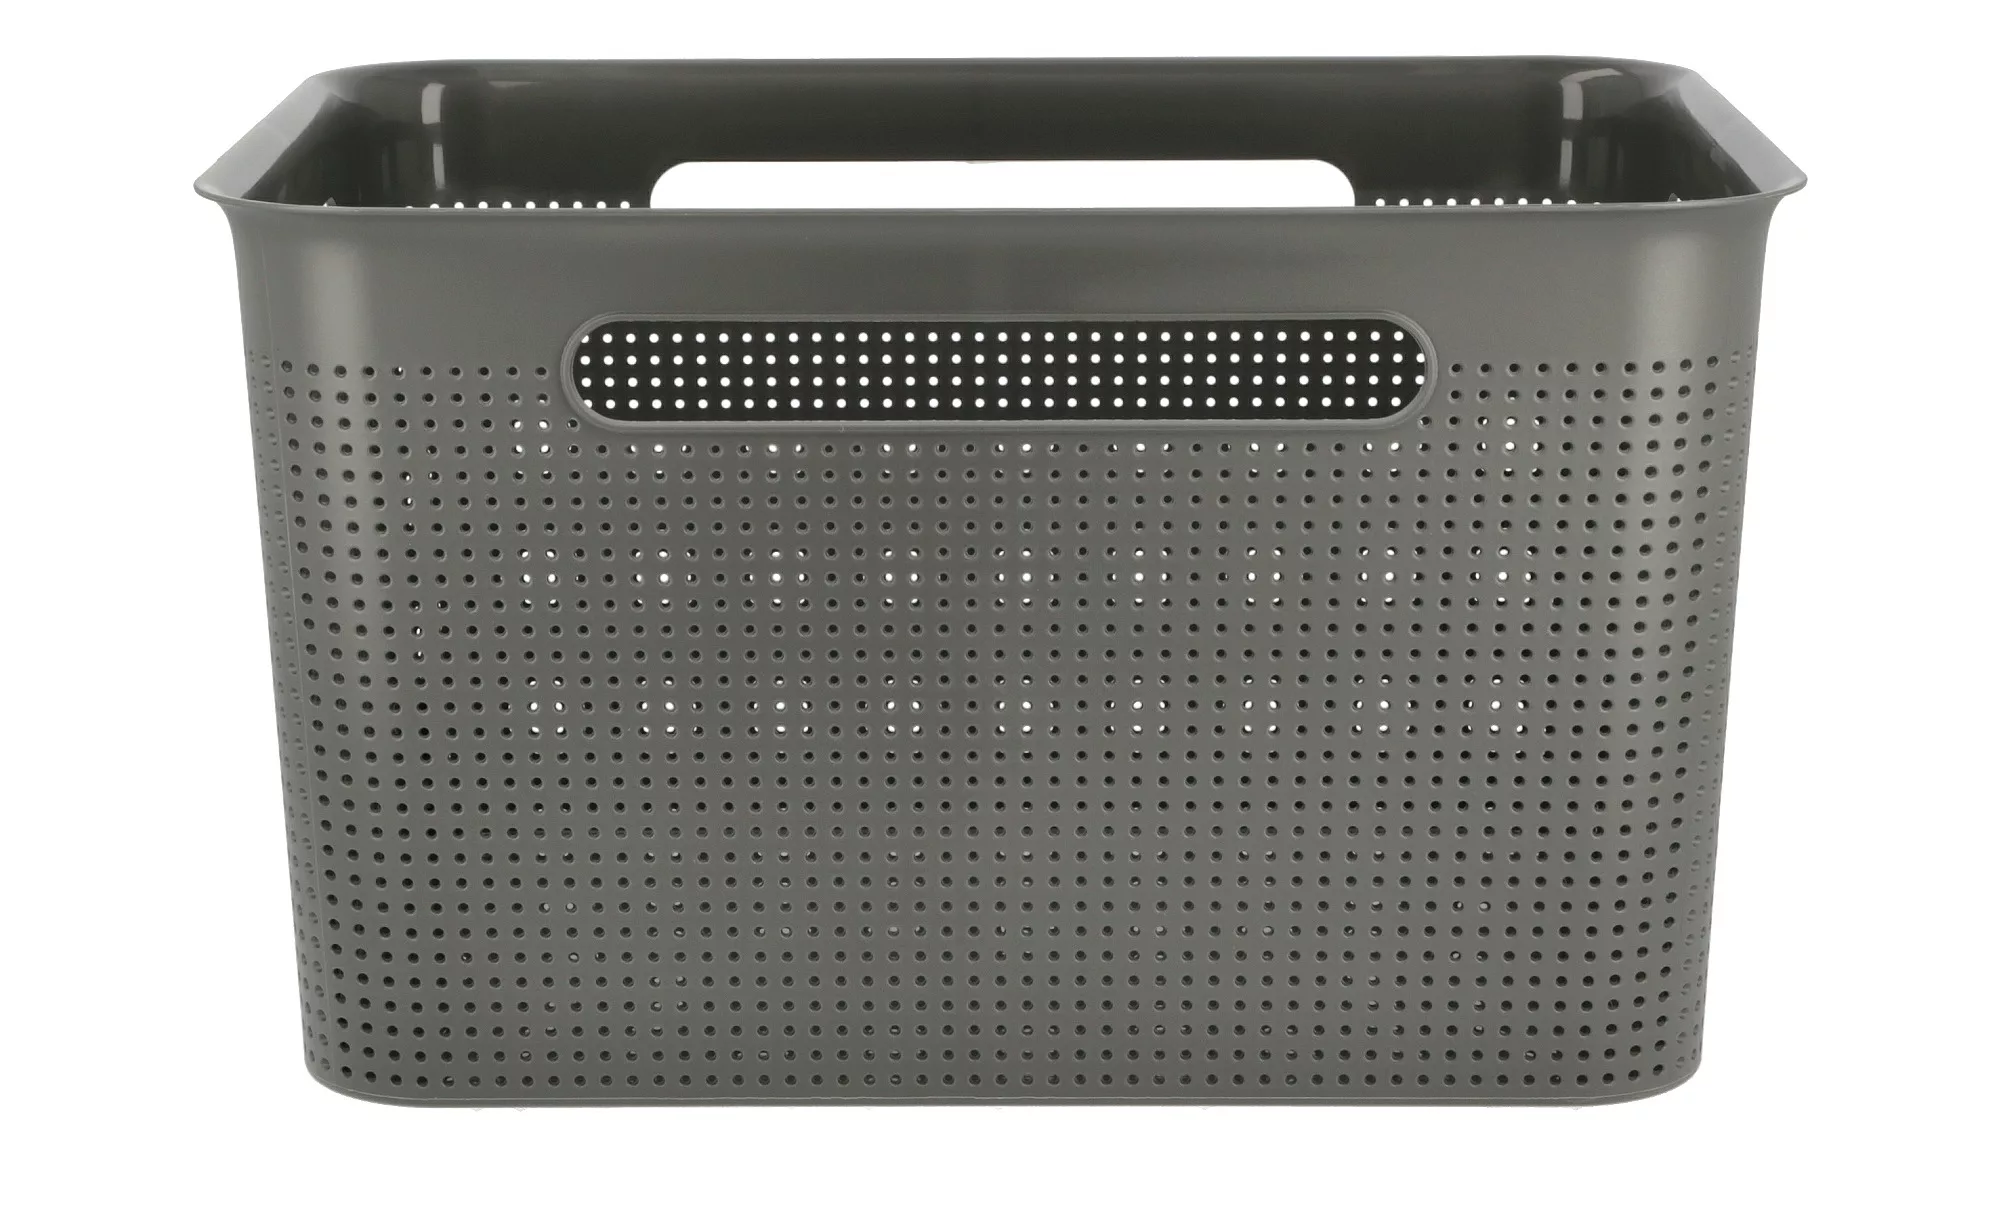 Rotho Aufbewahrungsbox - grau - Kunststoff - 36 cm - 21 cm - 26 cm - Sconto günstig online kaufen